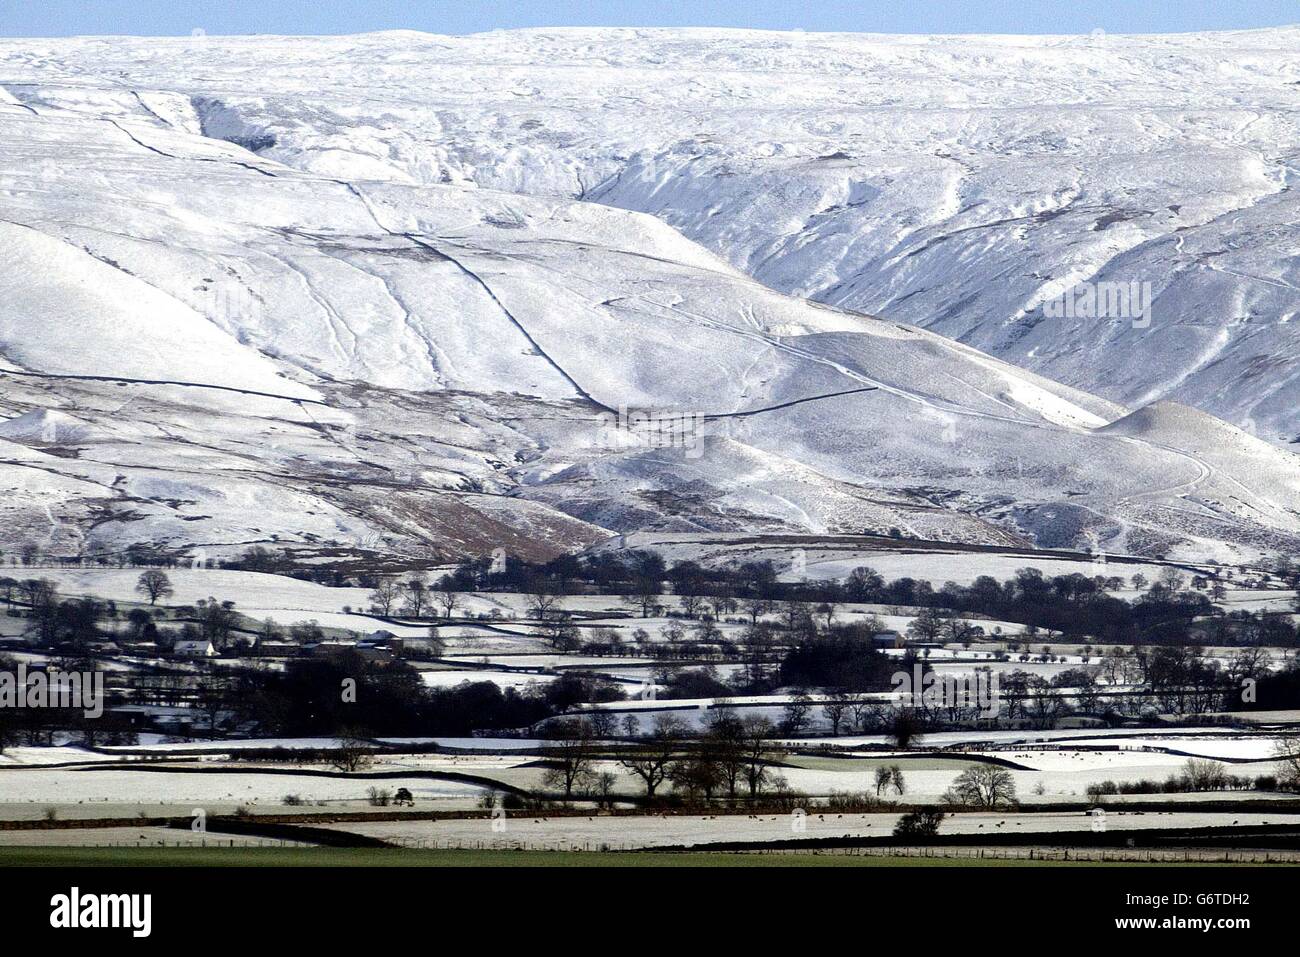 Der verschneite Blick über Penrith in Cumbria, da Großbritannien heute für mehr Schneeschauer und bittere Winde vorbereitet war, da das kalte Wetter seinen eisigen Griff auf das Land behielt. Viele Menschen wachten auch auf zwischen 3cm und 10cm Schnee in Schottland und 2cm bis 3cm anderswo im Land, als der Schneefall in der letzten Nacht sesshaft wurde. Stockfoto